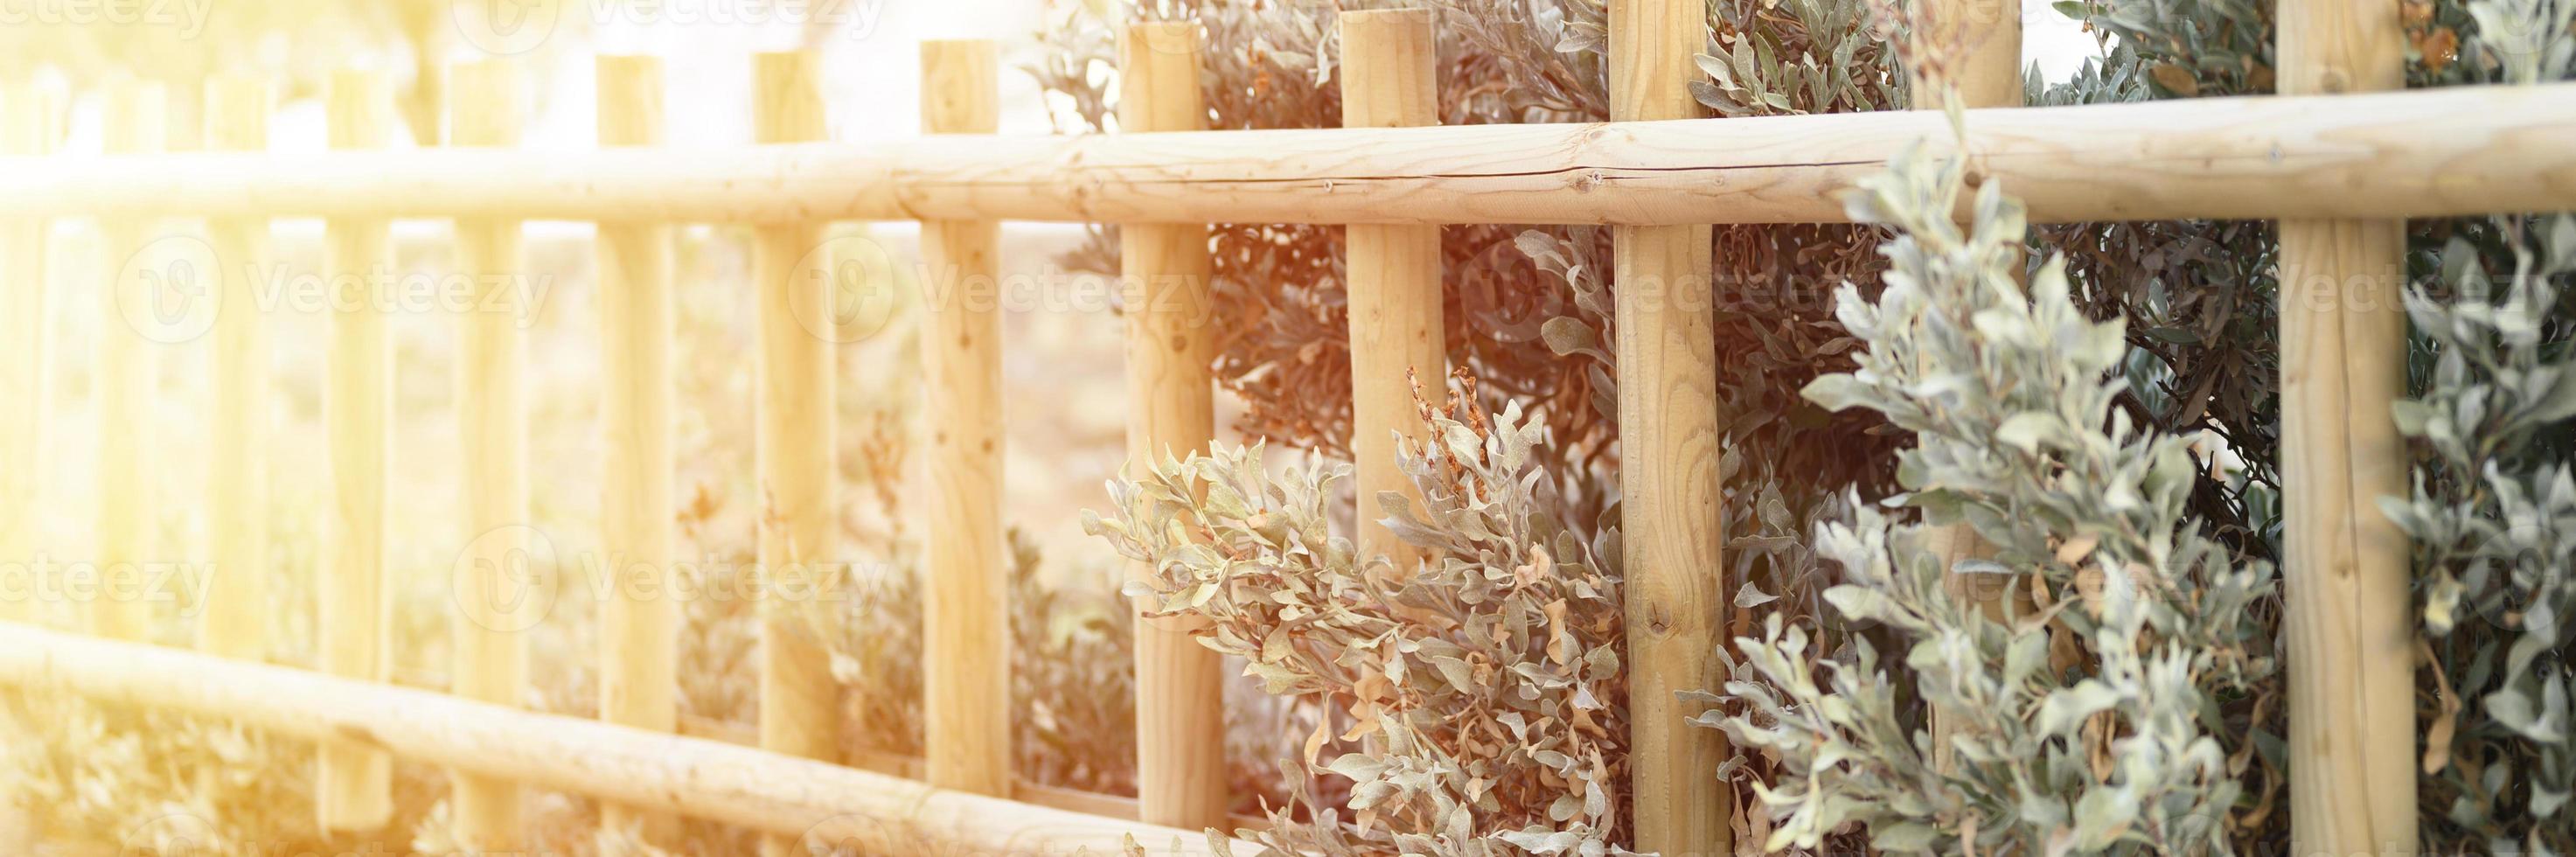 valla de madera decorativa y plantas de arbustos verdes blancos foto